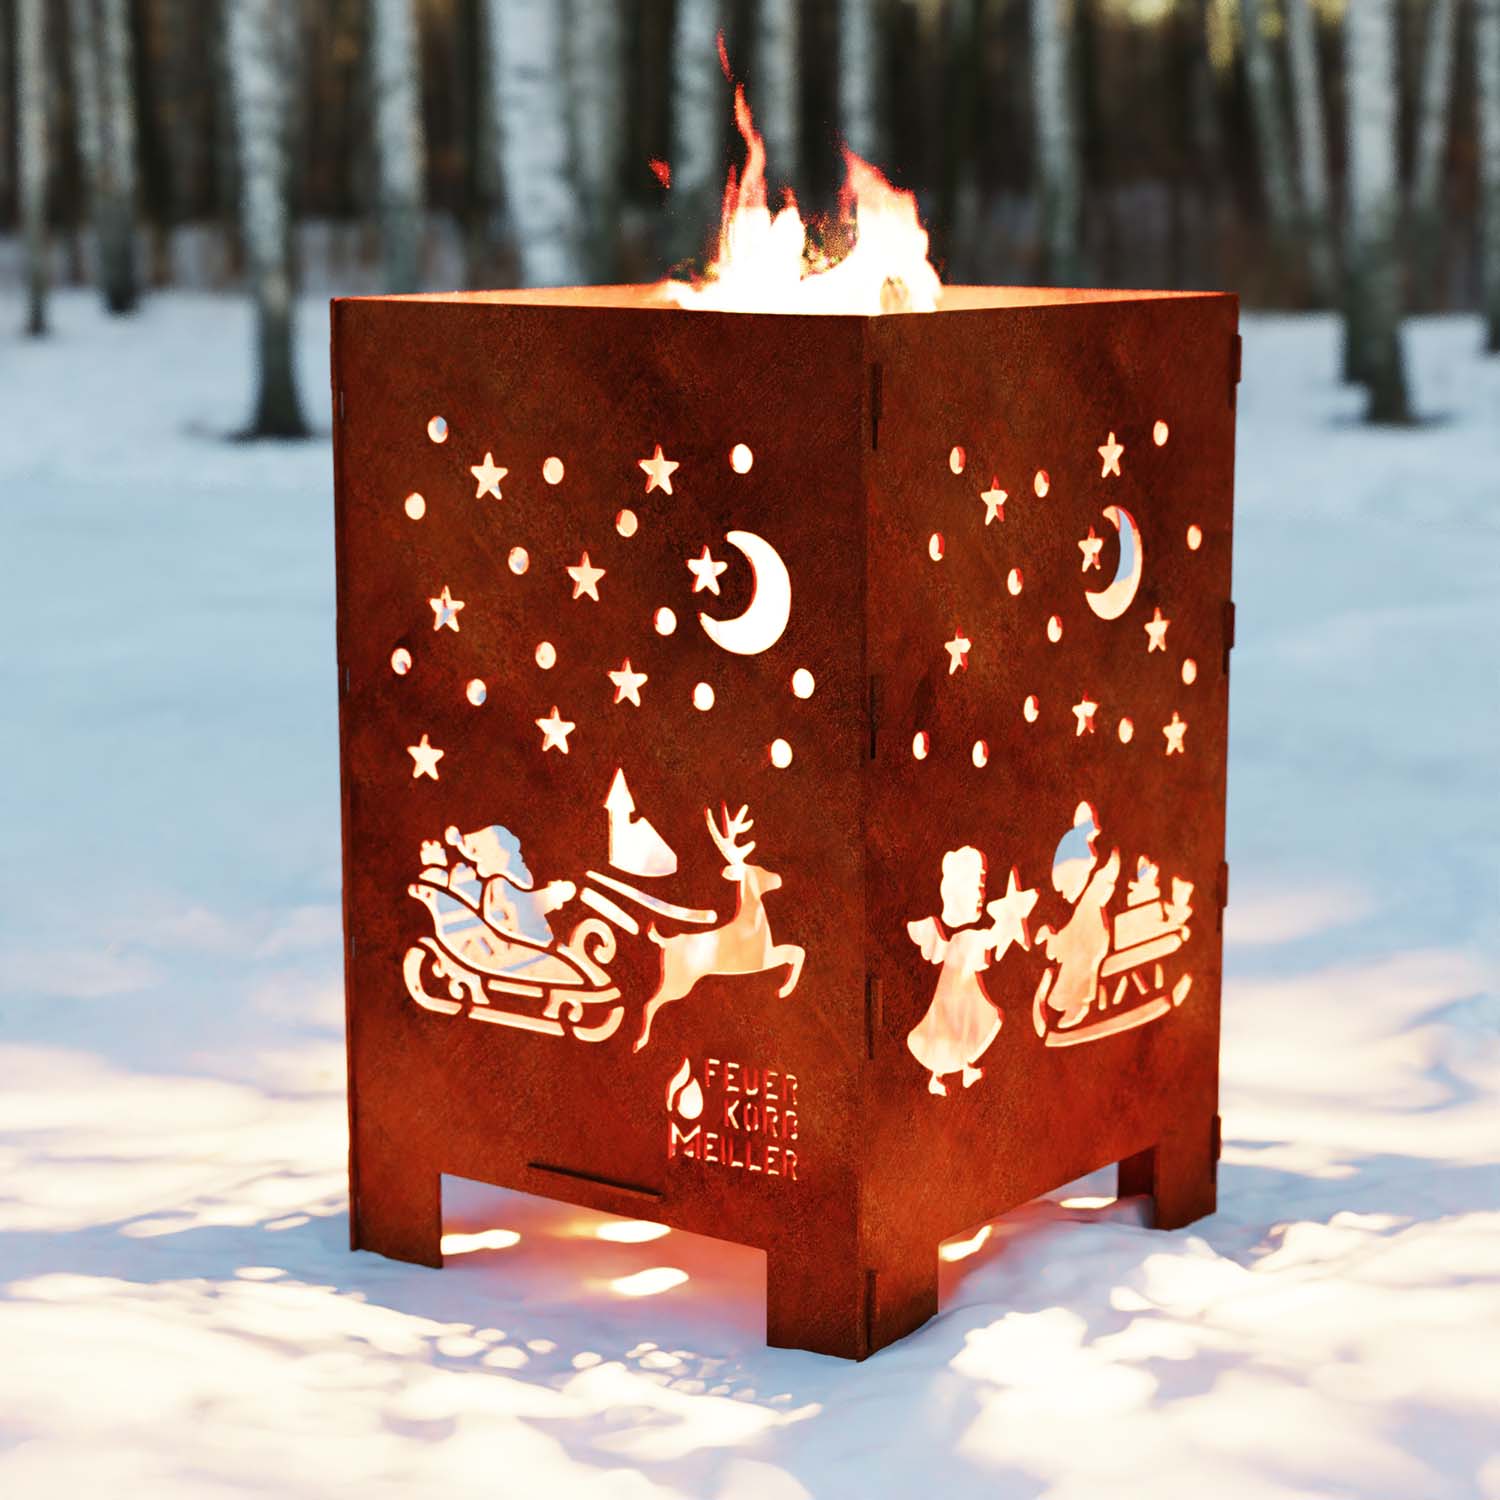 Feuerkorb aus Stahl, Motiv Weihnachtsschlitten, 40 x 40 x 60 cm, Materialstärke 4 mm